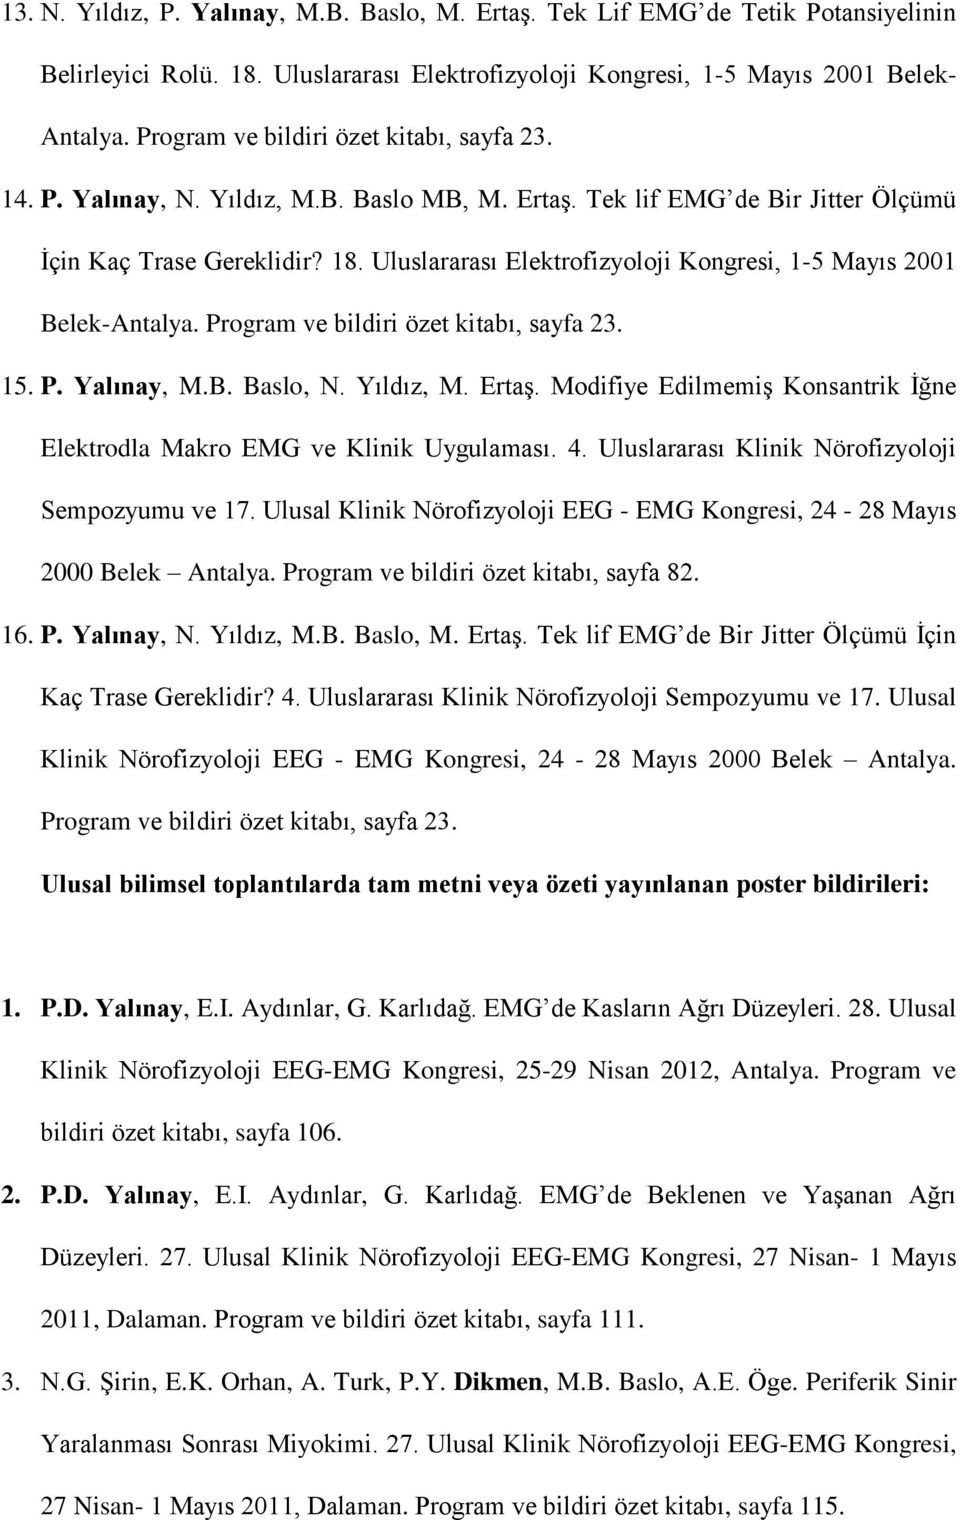 Uluslararası Elektrofizyoloji Kongresi, 1-5 Mayıs 2001 Belek-Antalya. Program ve bildiri özet kitabı, sayfa 23. 15. P. Yalınay, M.B. Baslo, N. Yıldız, M. Ertaş.